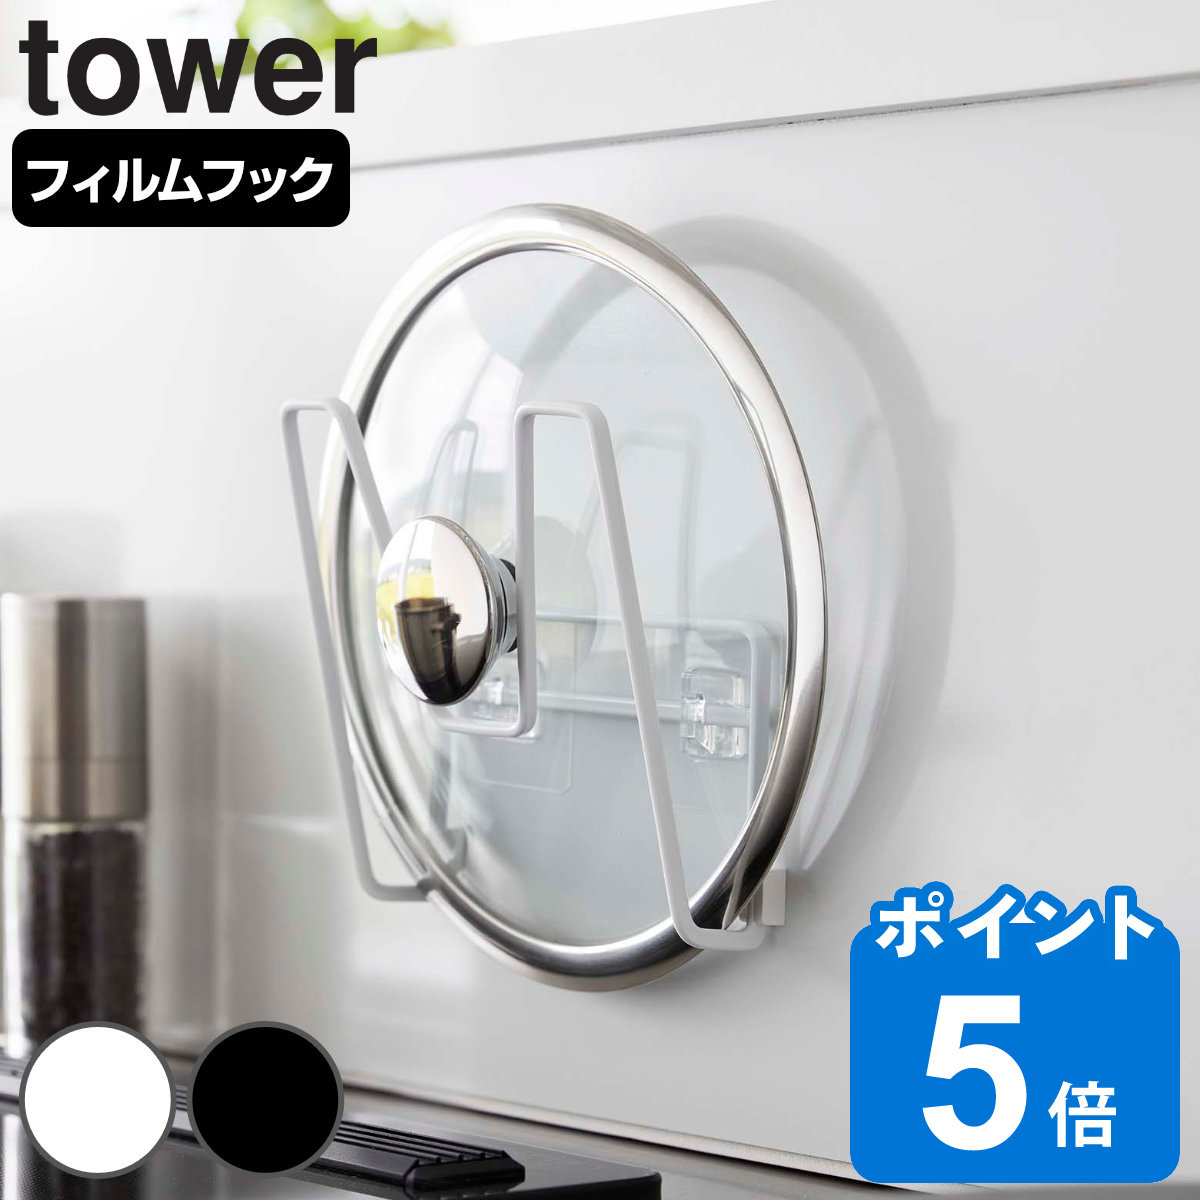 山崎実業 tower フィルムフック鍋蓋ホルダー タワー